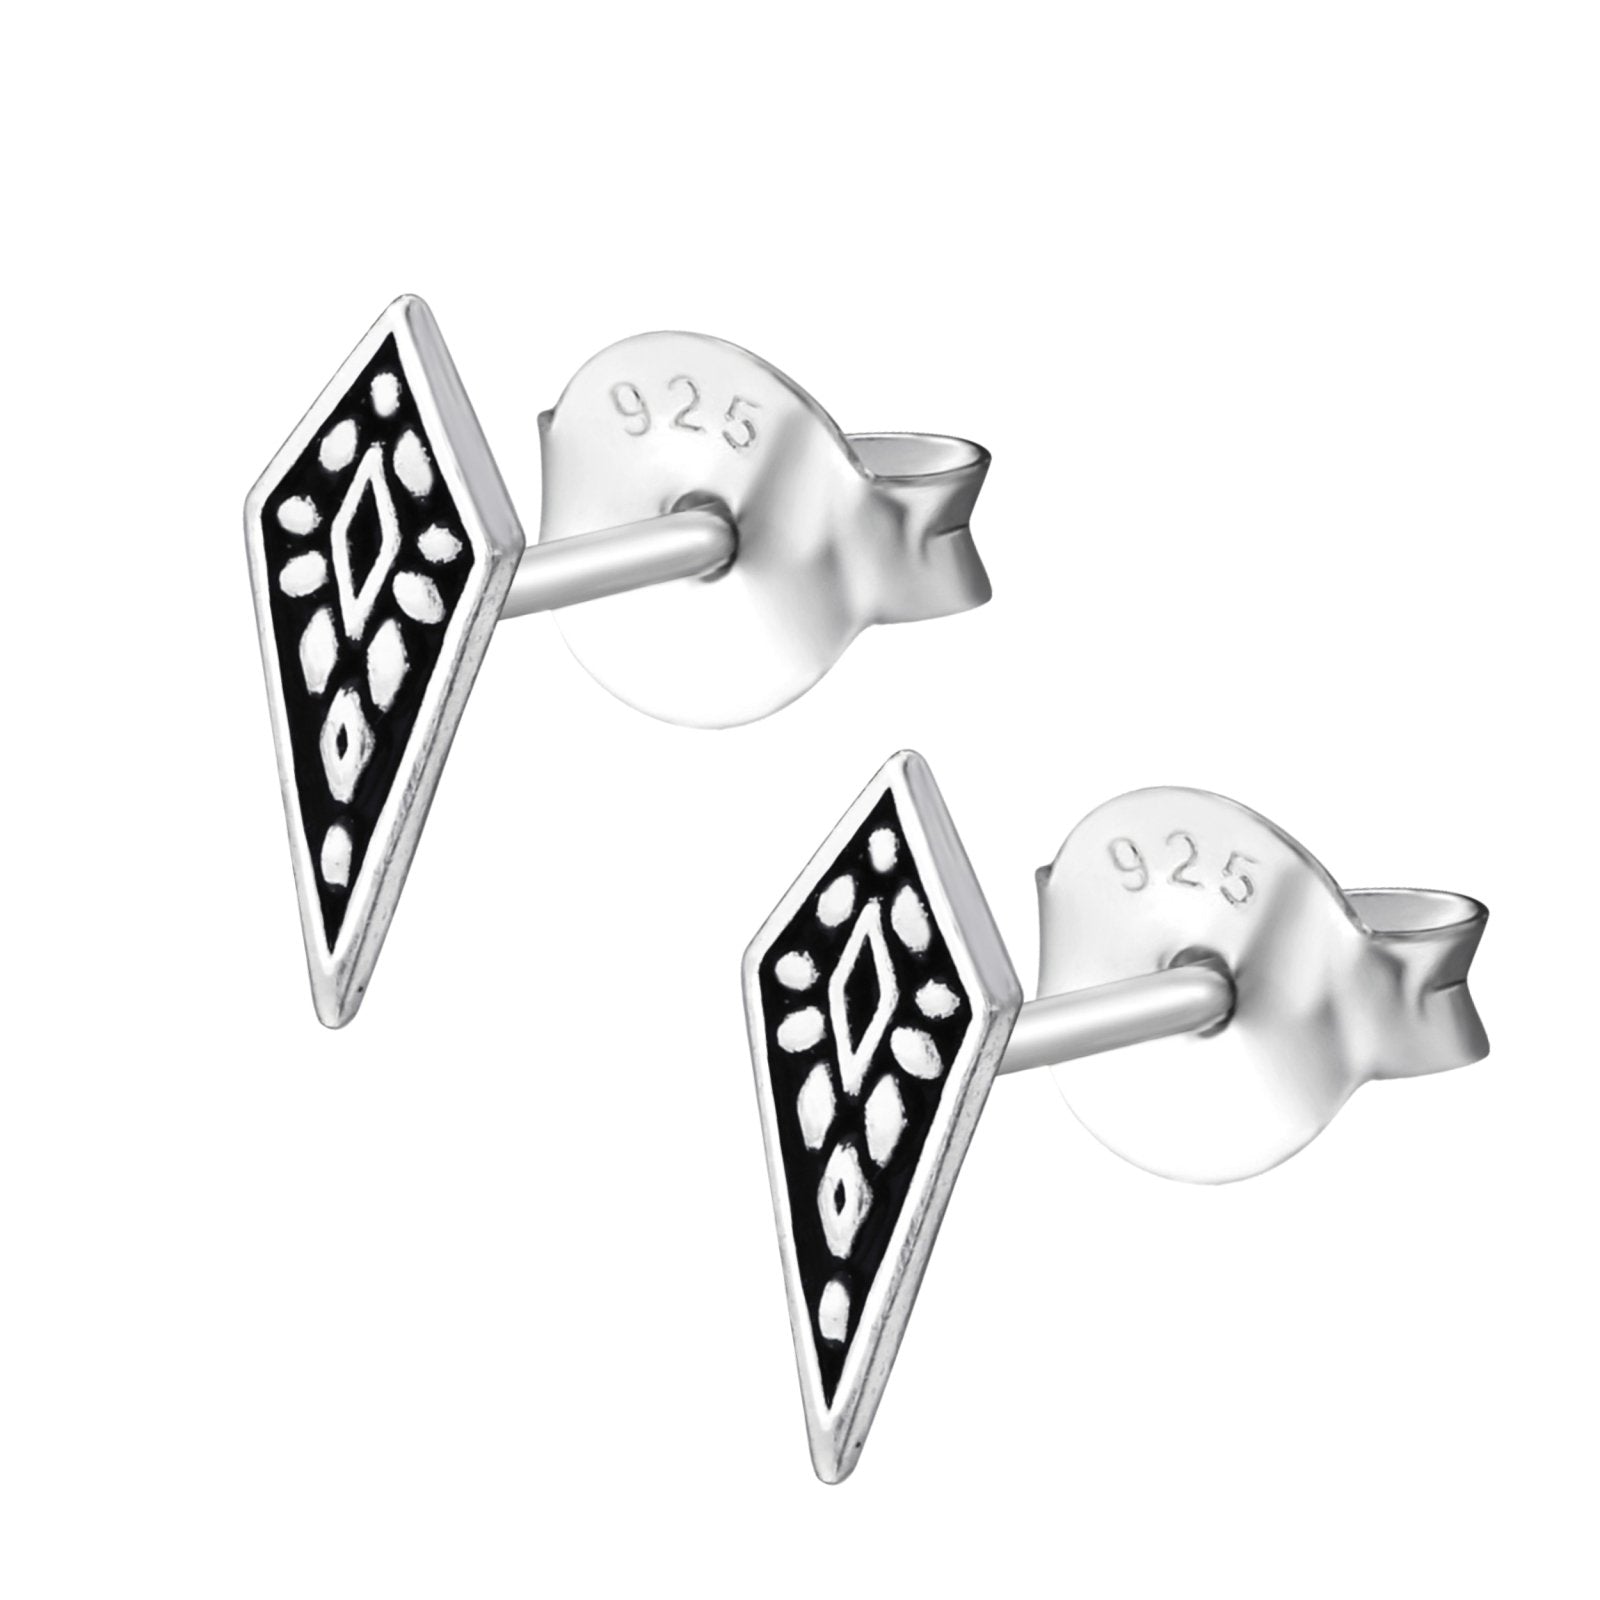 Beaded Diamond Stud Earrings - Melanie Golden Jewelry - earring, earrings, minimal, minimal jewelry, mothers day, post earrings, stud, stud earrings